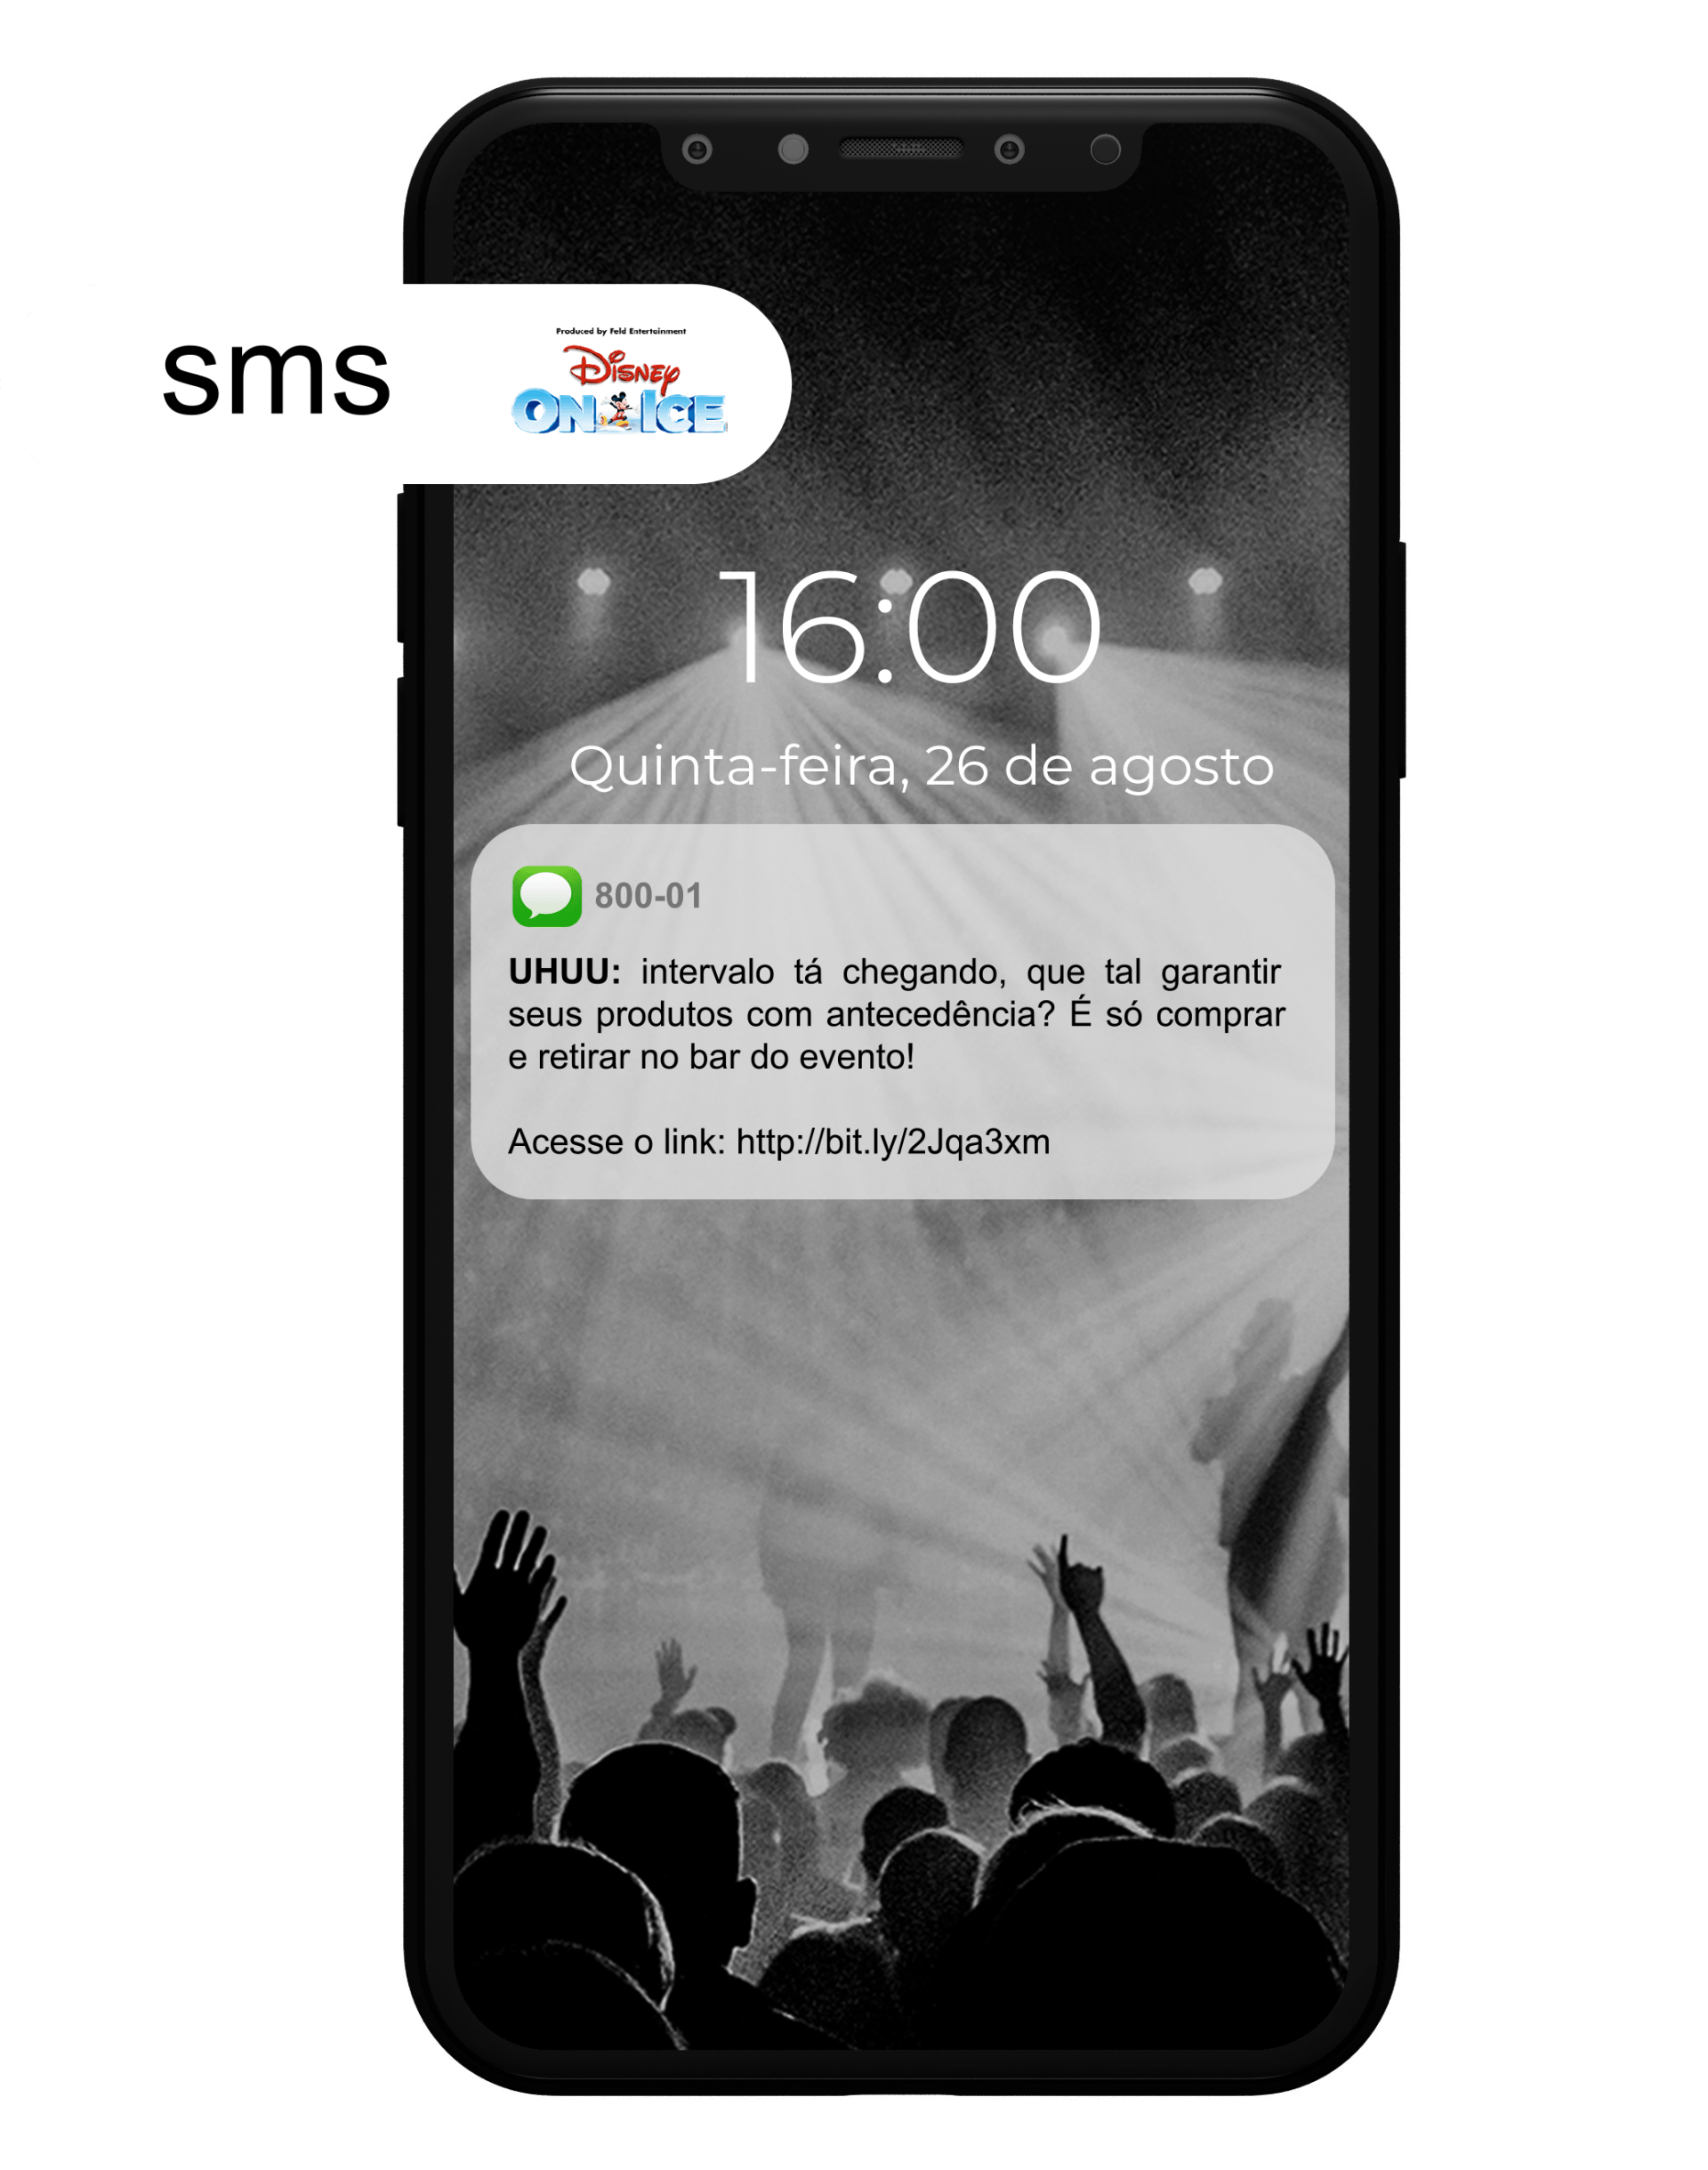 Celular com notificação de SMS sobre um evento